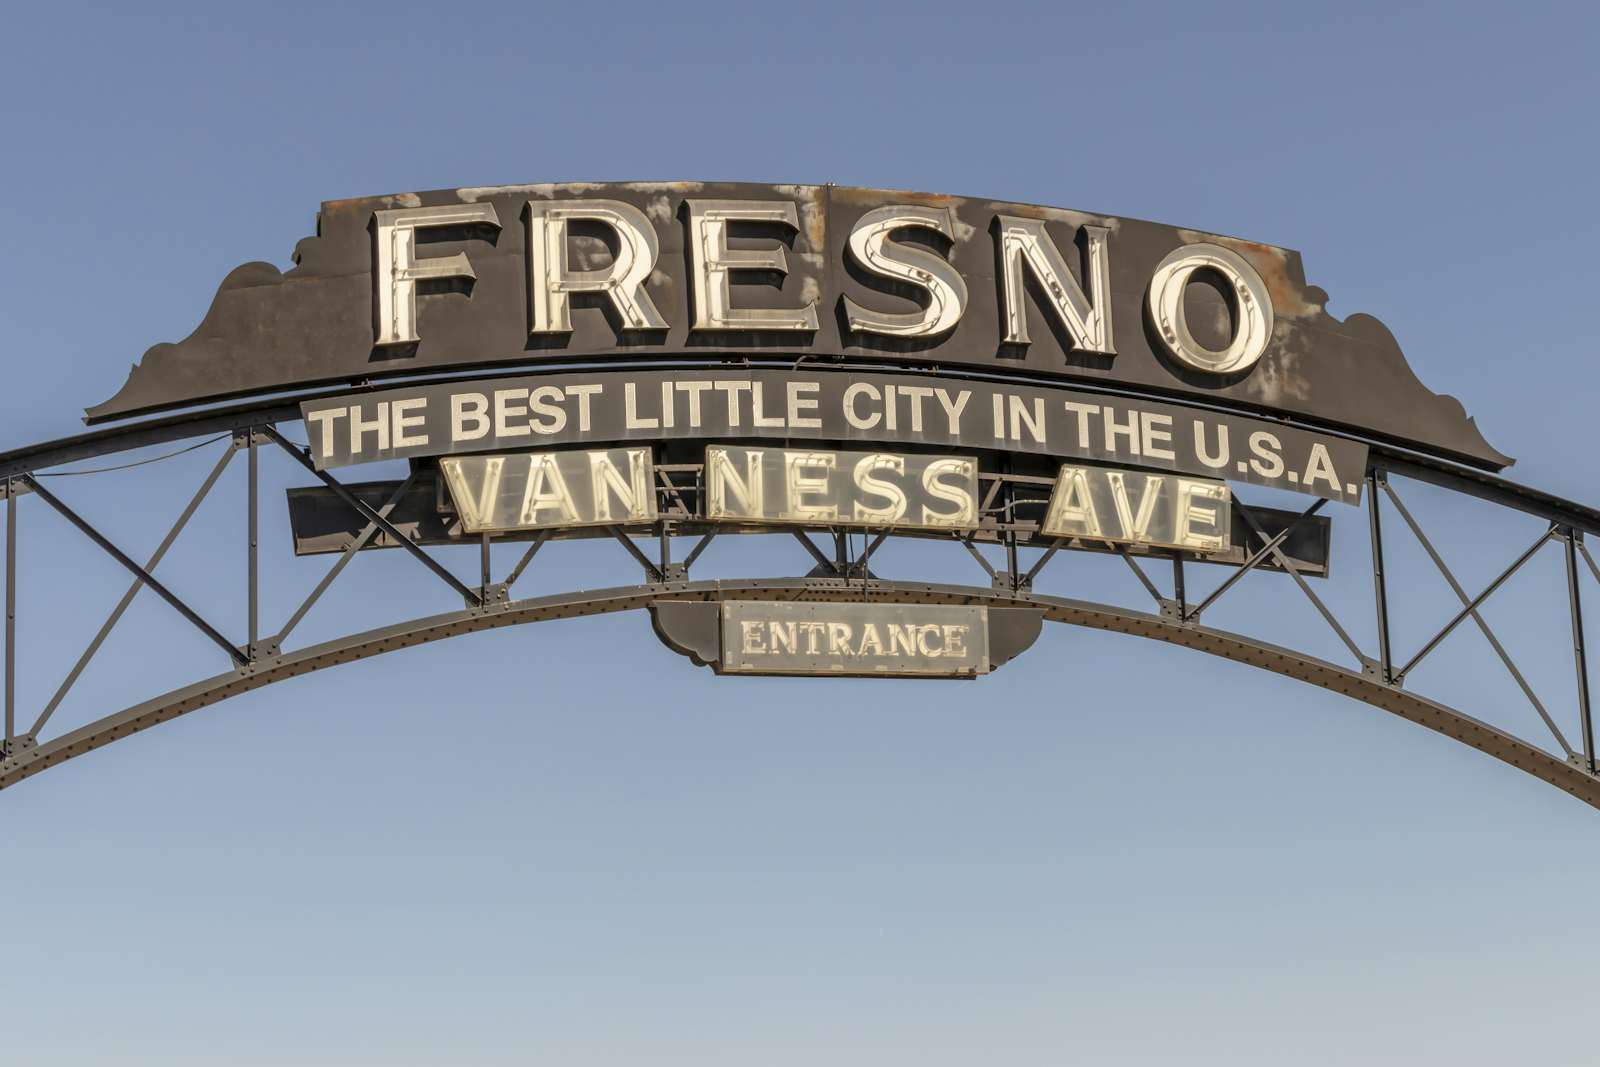 Fresno Historic Sign in California